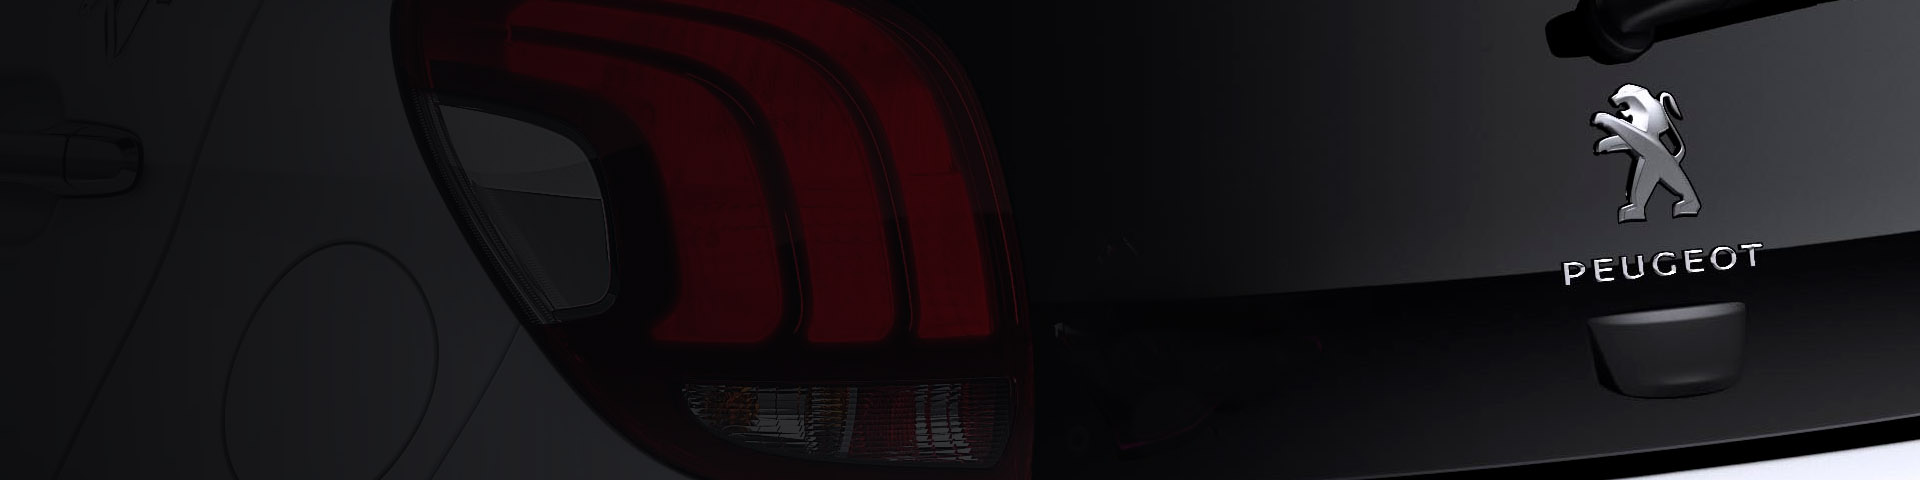 Peugeot 508 Fastback Backdrop